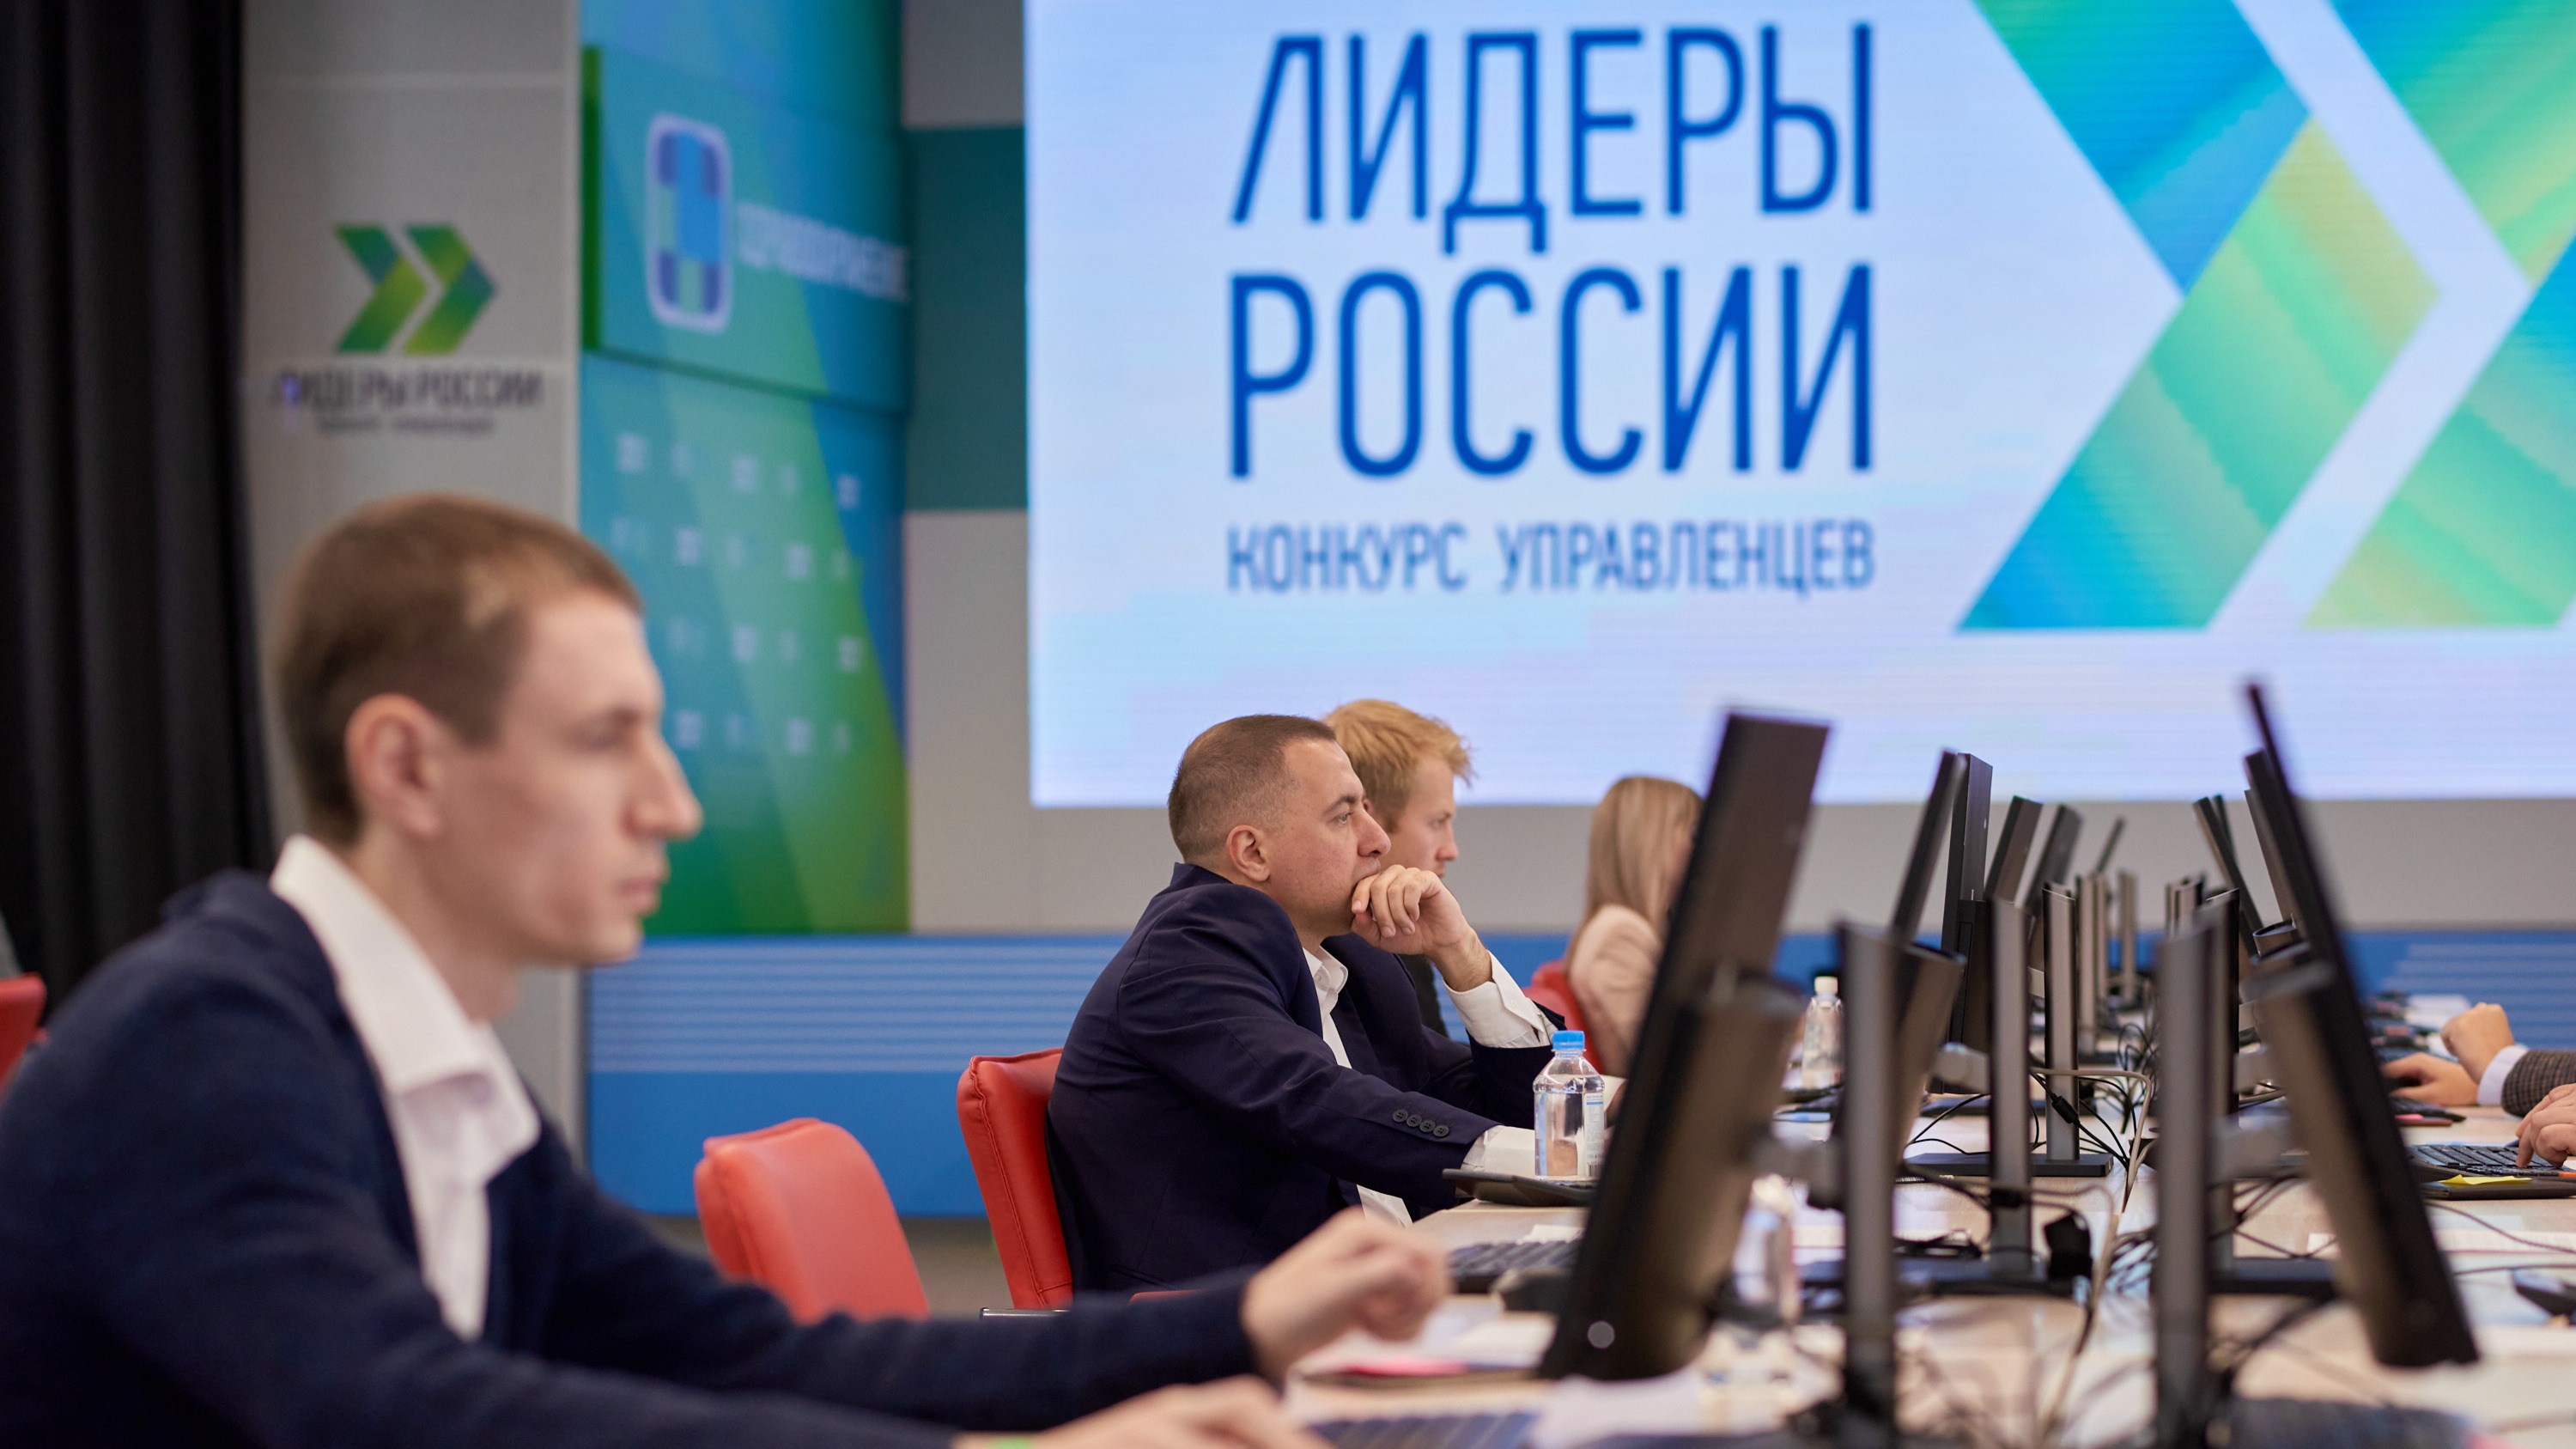 Впервые в истории конкурса «Лидеры России» участники дистанционного этапа напишут диктант по русскому языку 